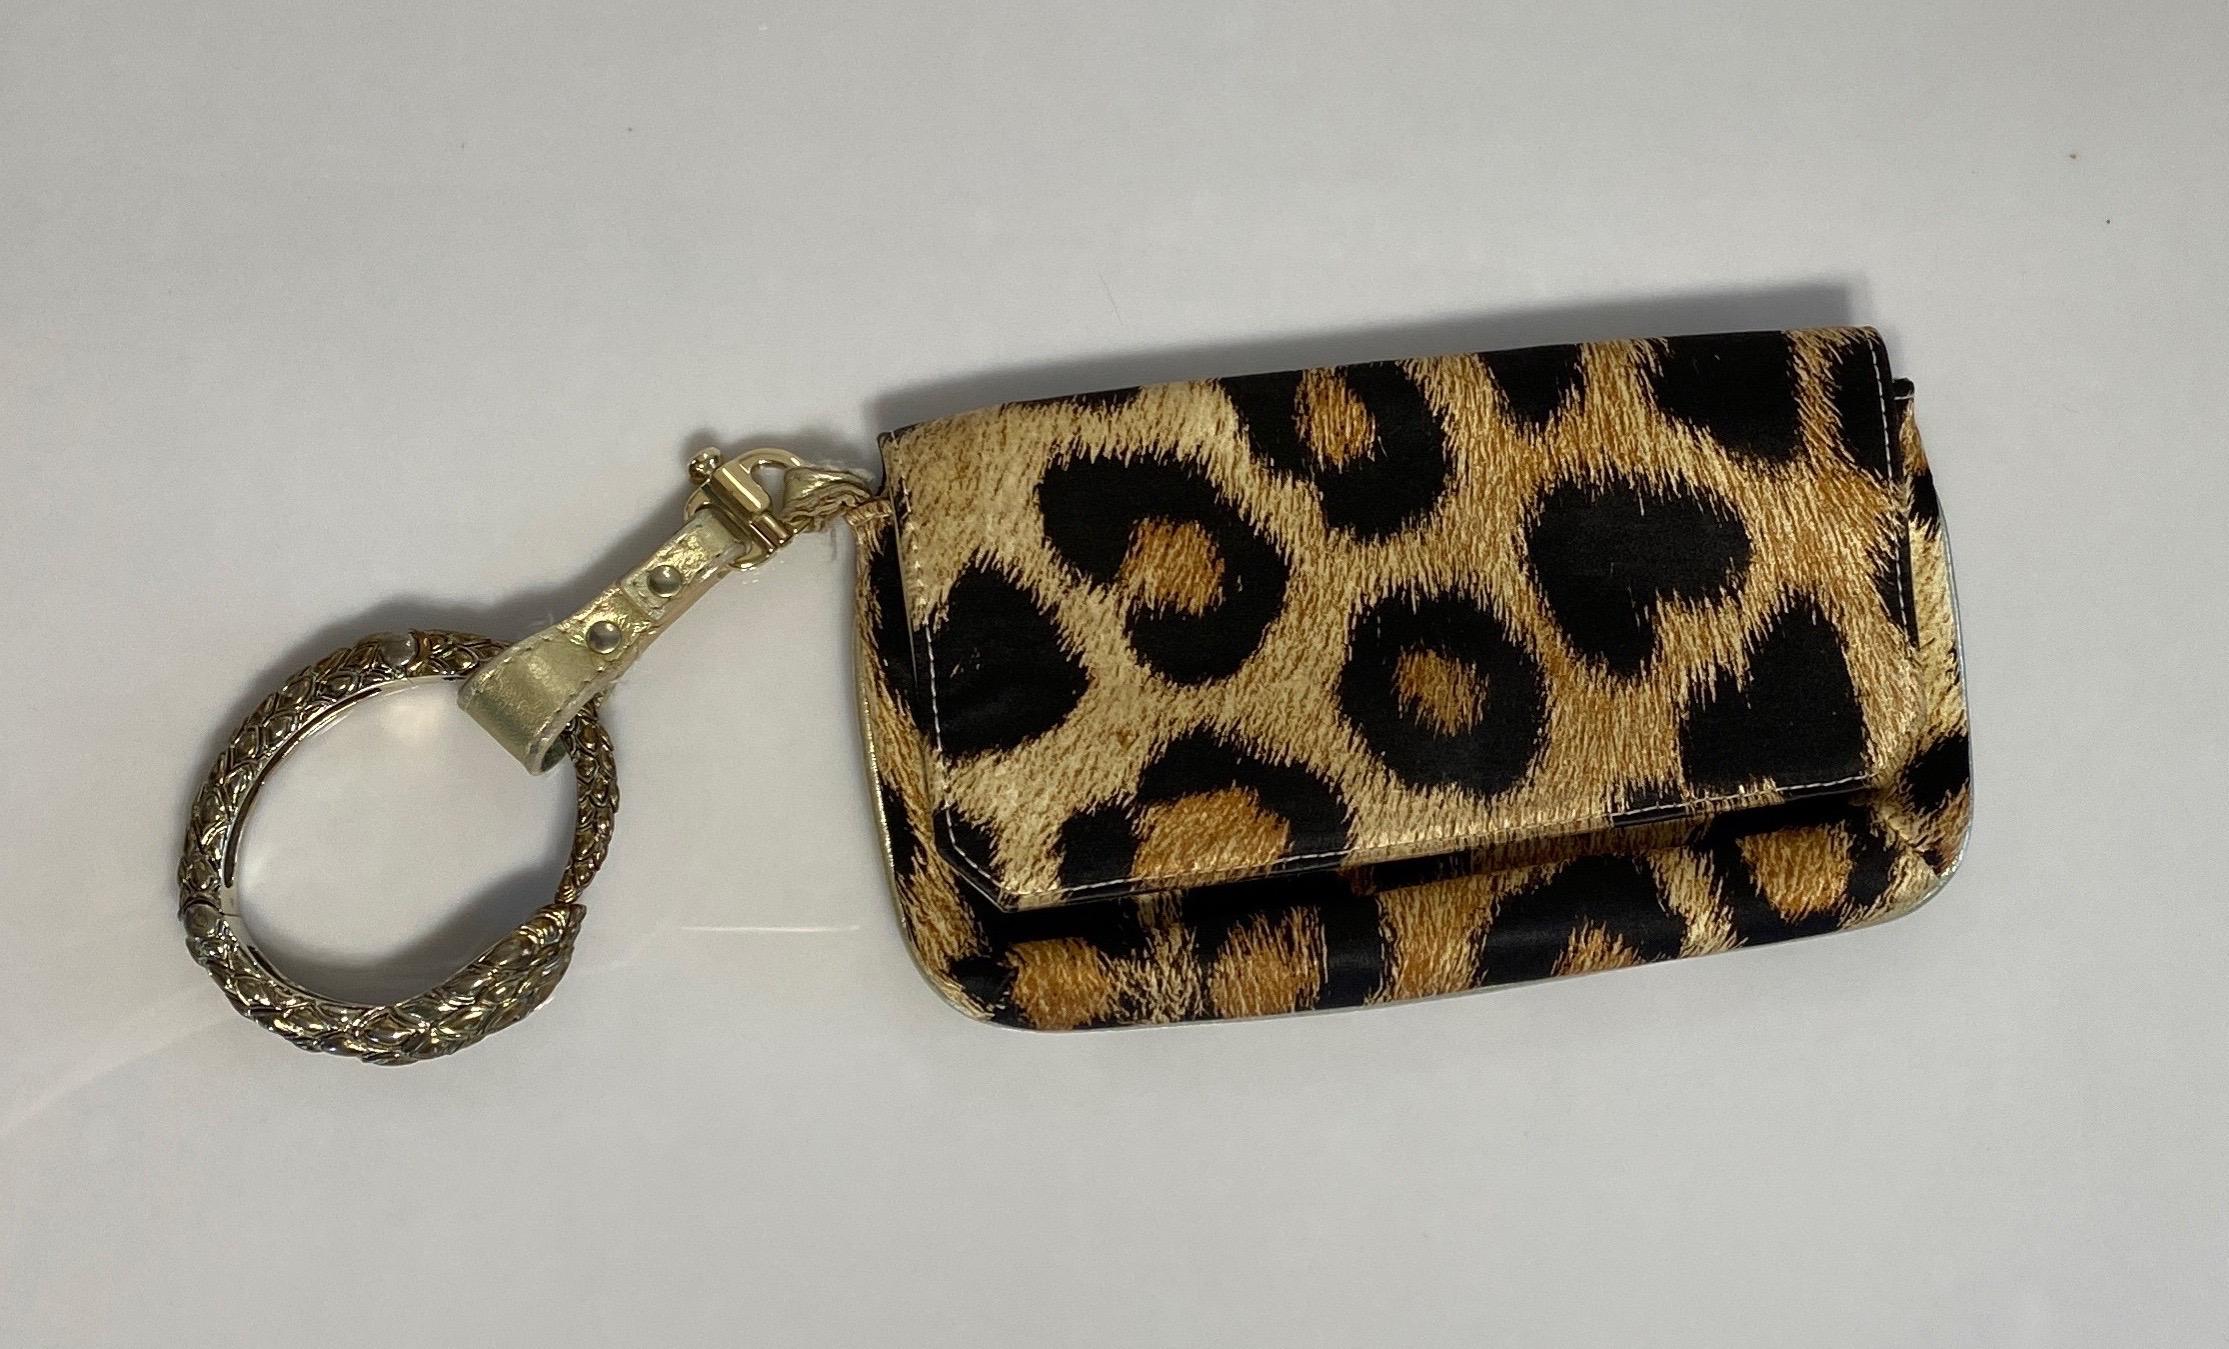 Le sac à bracelet en soie imprimé léopard de Roberto Cavalli est une pochette en soie imprimé léopard or et marron avec des passepoils en cuir doré et un bracelet serpent or/bronze amovible en guise d'anse. La poignée amovible est munie d'un fermoir